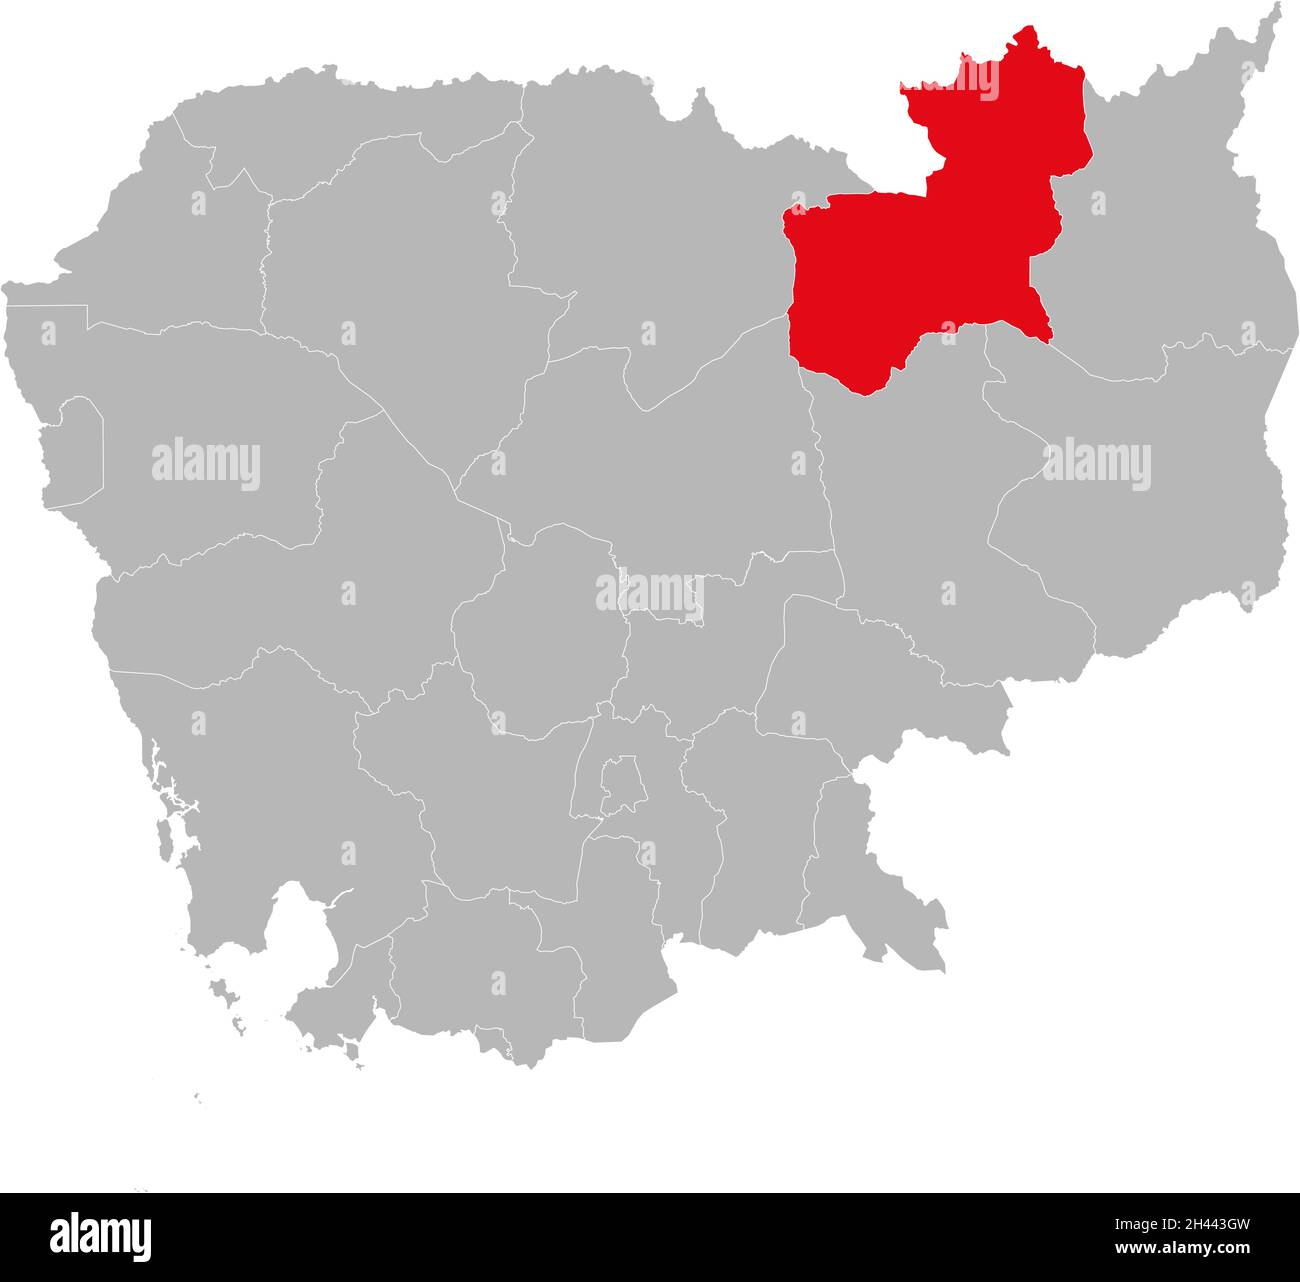 Isolierte kambodschanische Landkarte der Provinz Stung Treng. Grauer Hintergrund. Geschäftskonzepte und -Hintergründe. Stock Vektor